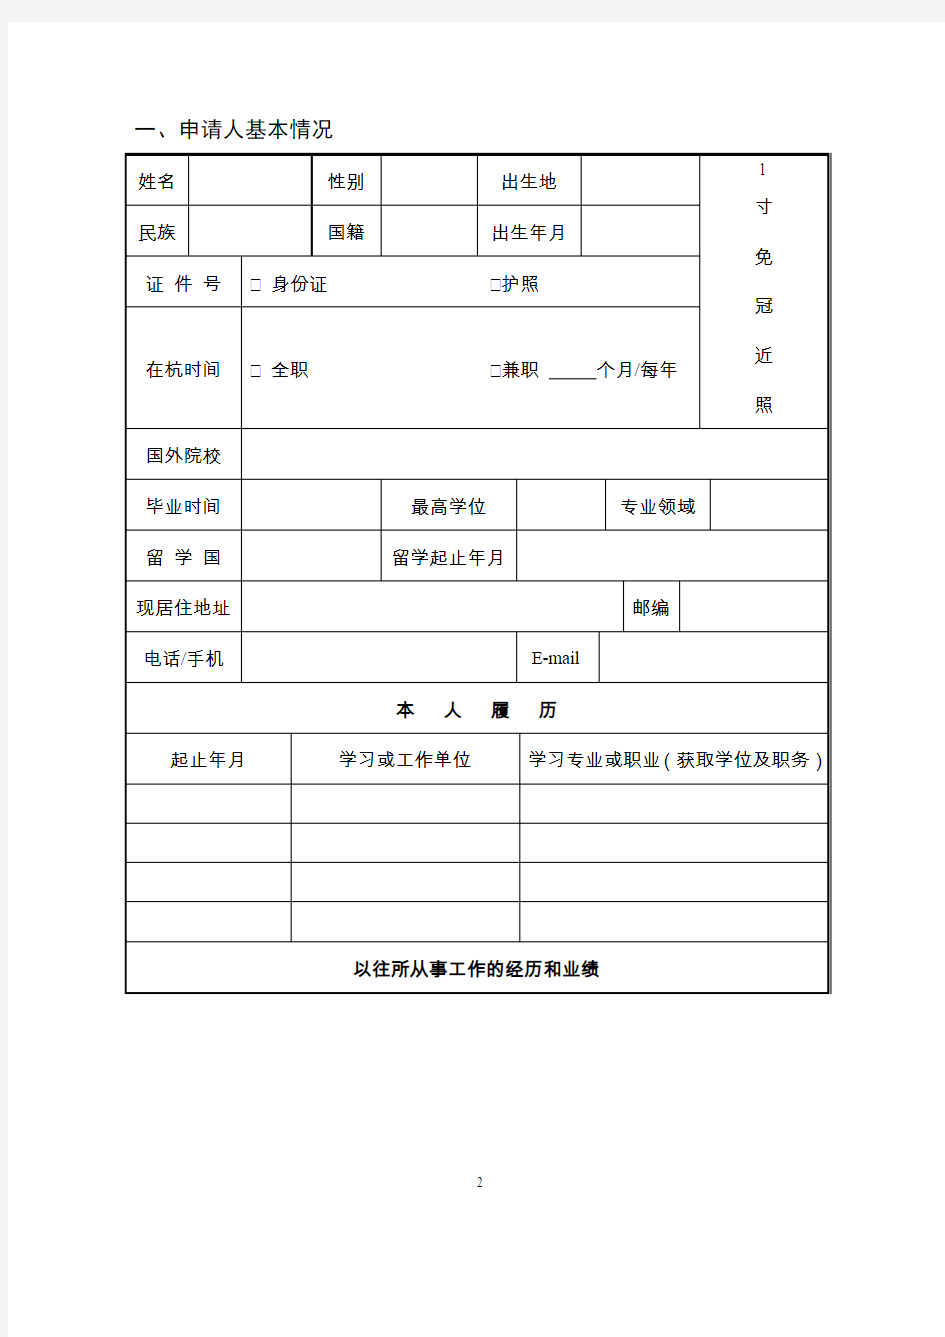 杭州经济技术开发区高层次人才创业创新项目申请表